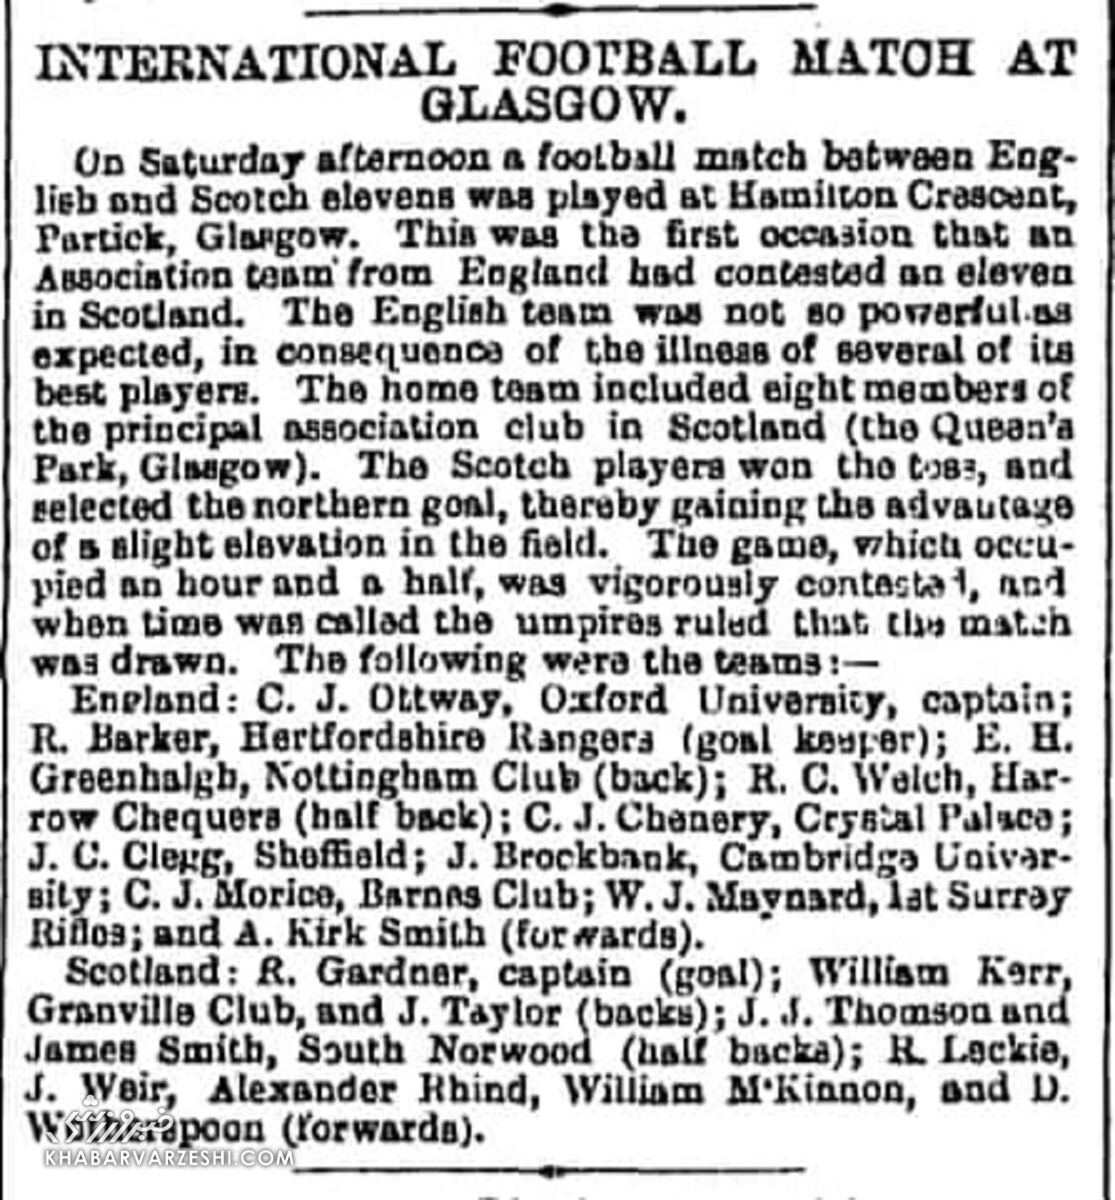 داستان اولین بازی ملی فوتبال بین انگلیس و اسکاتلند